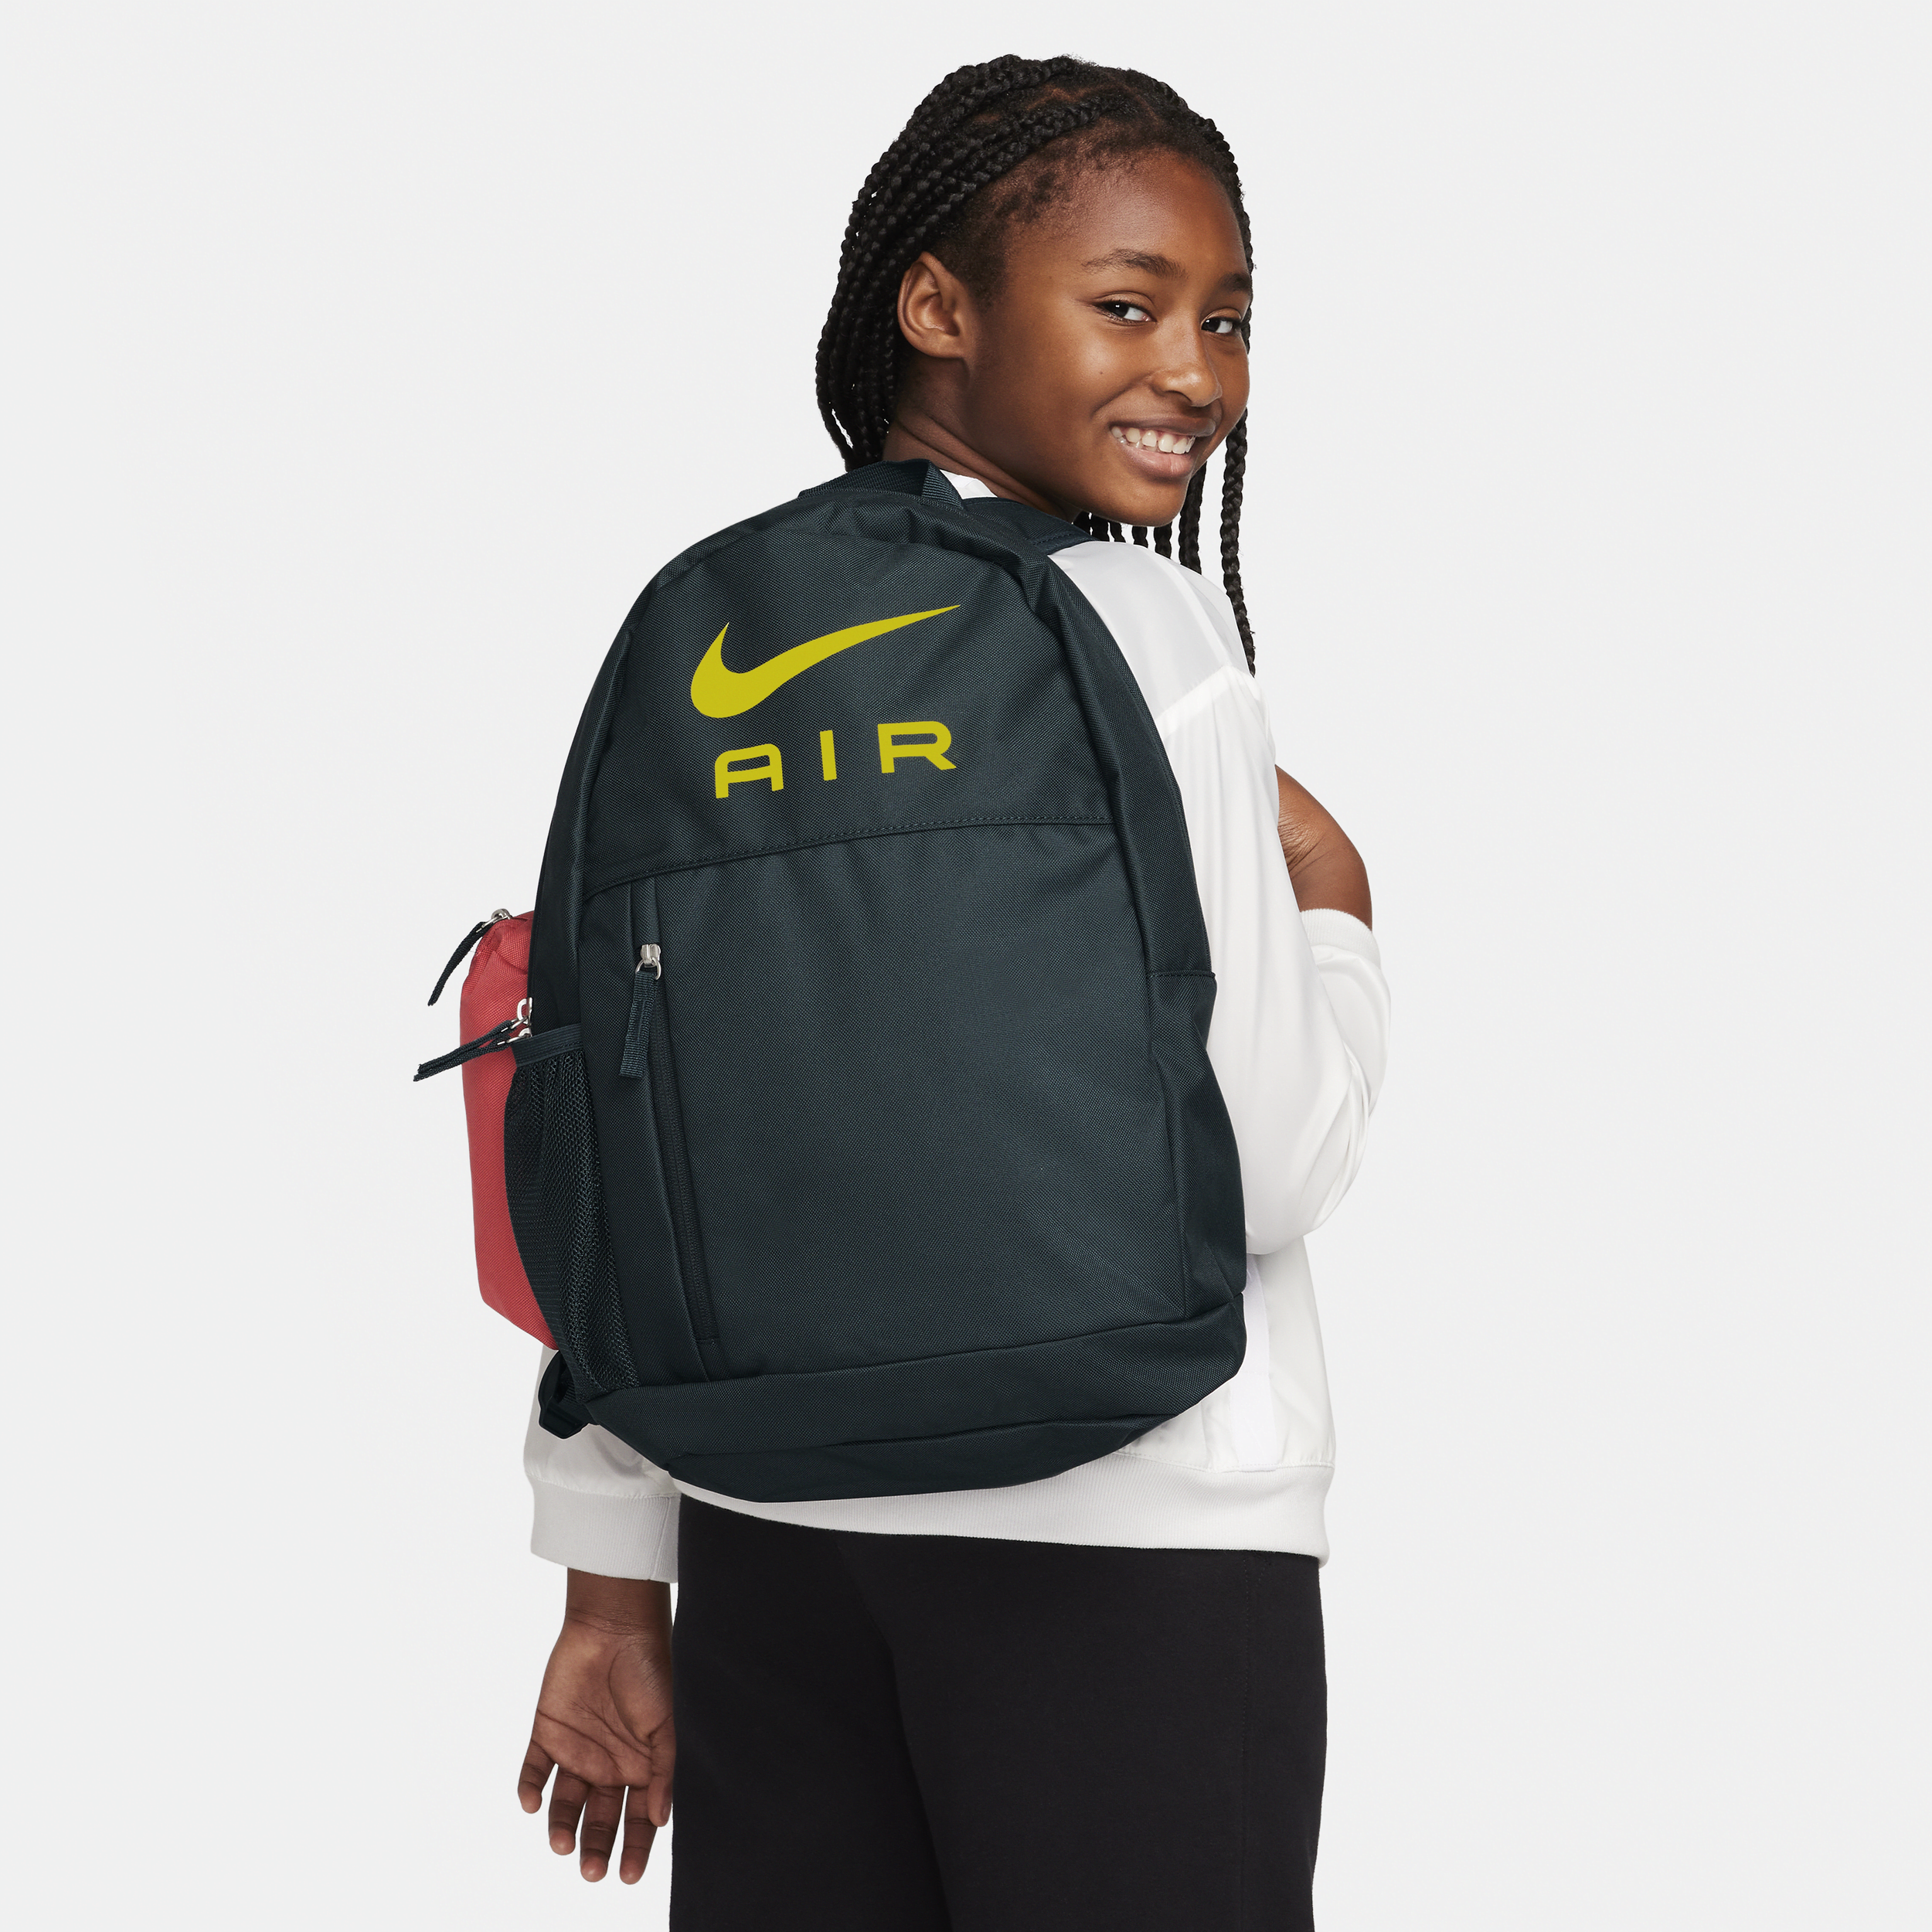 Nike-rygsæk til børn (20 liter) - grøn